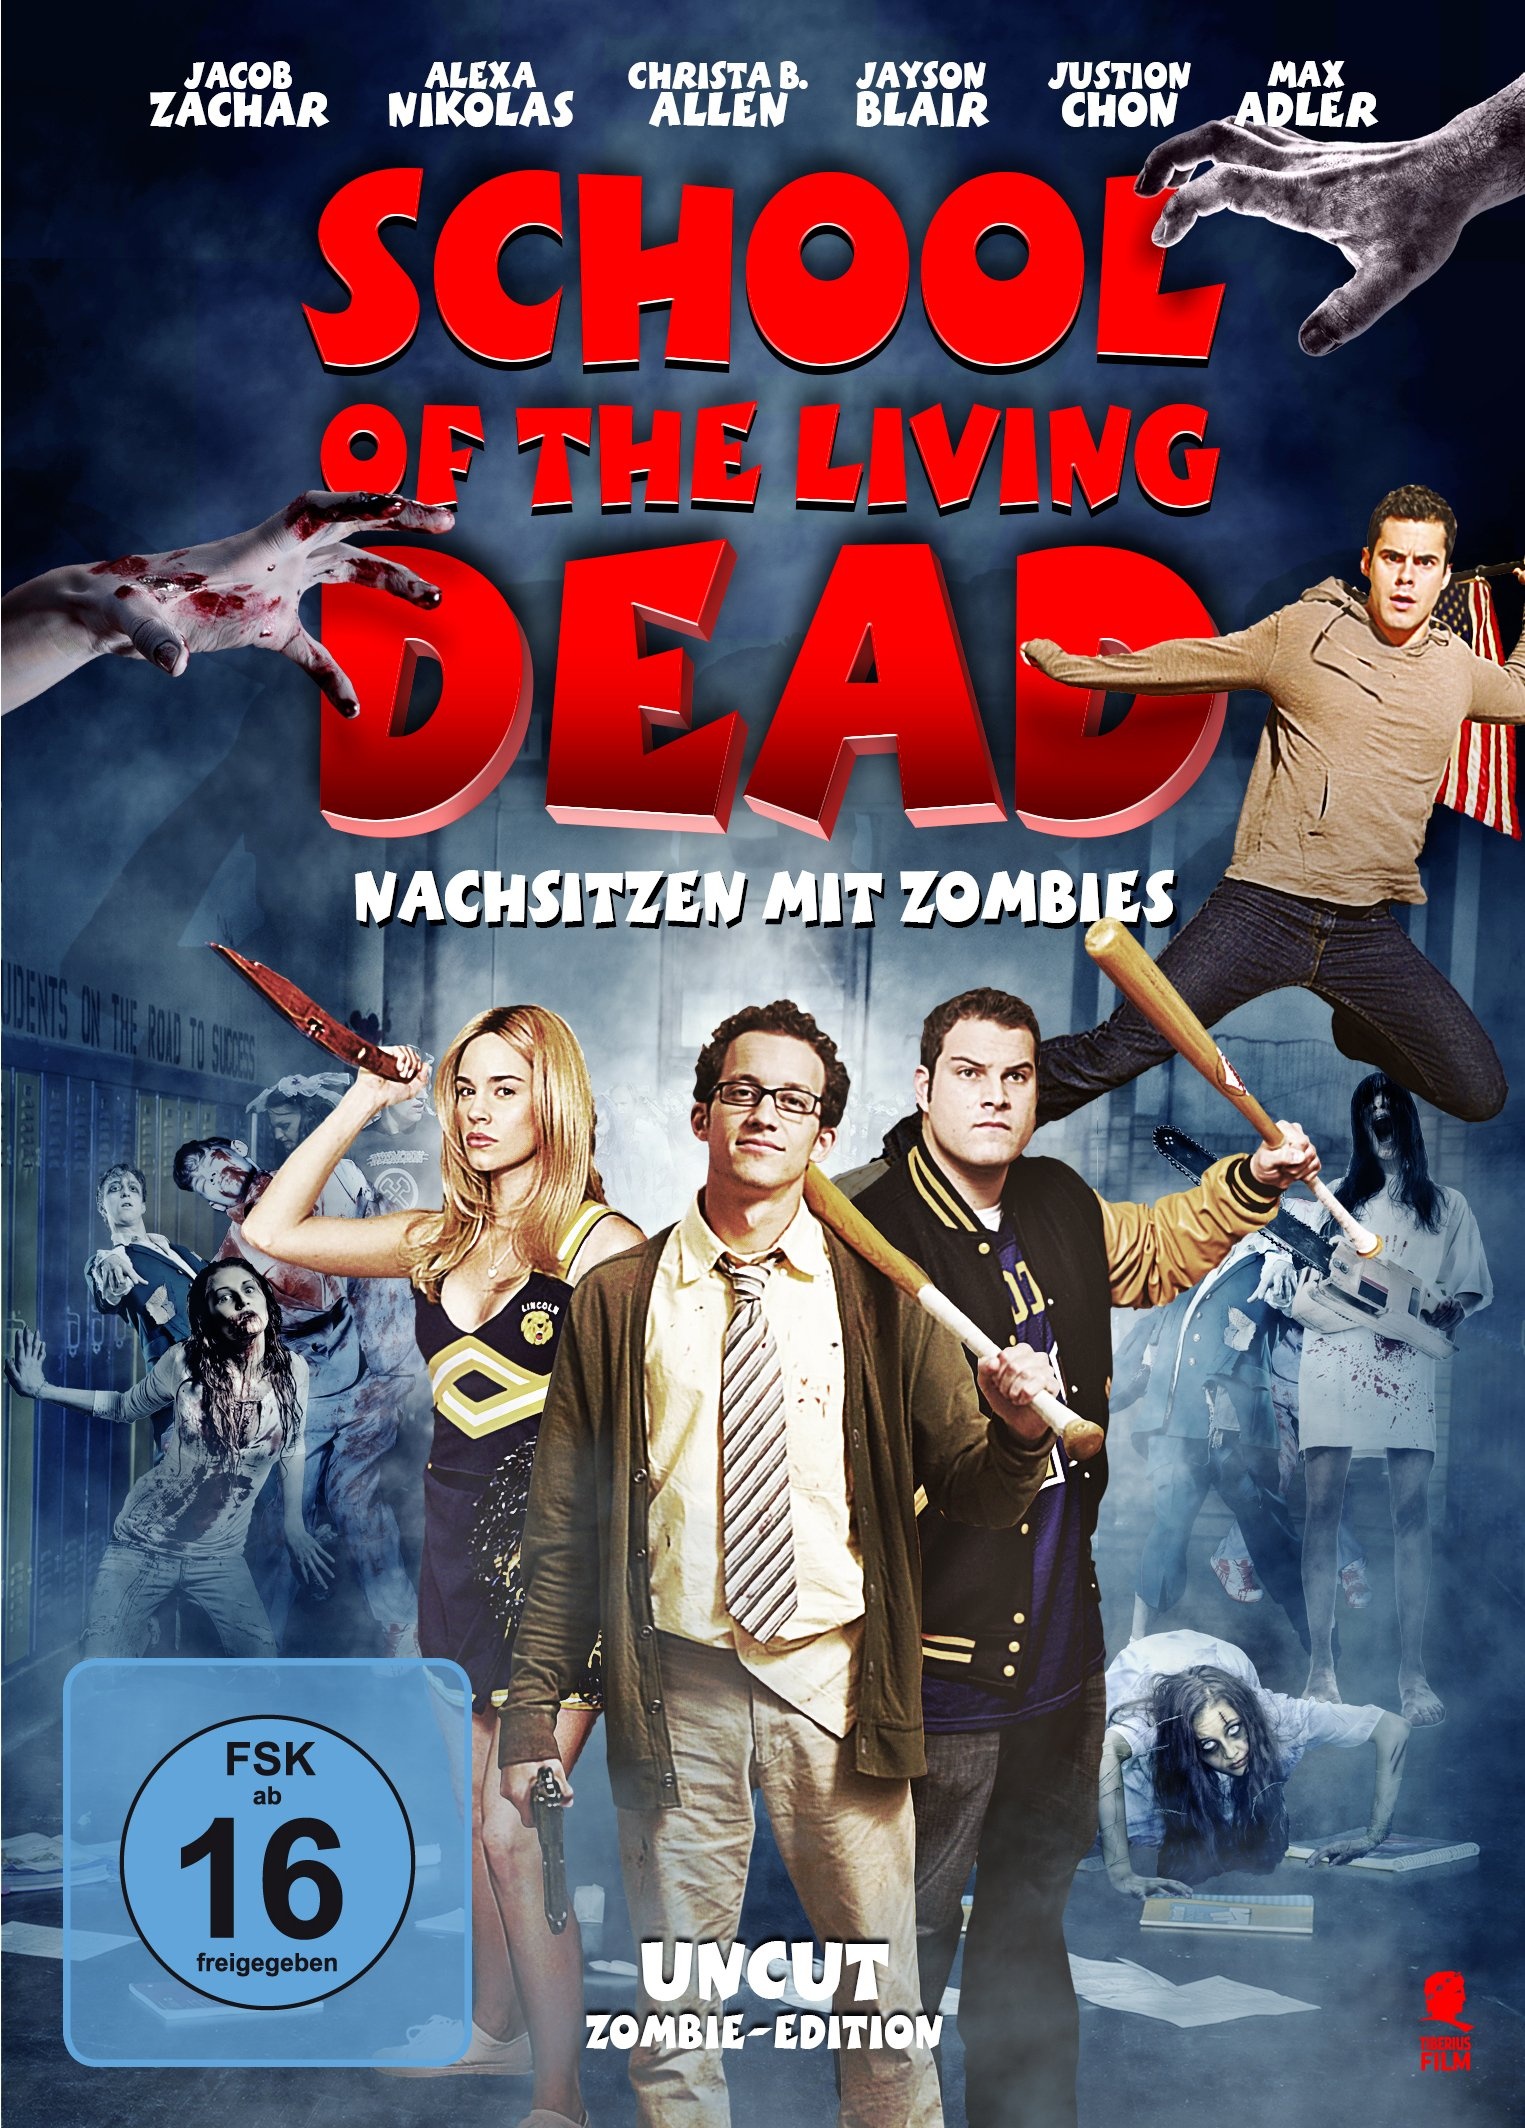 School of the Living Dead - Nachsitzen mit Zombies (Uncut Zombie-Edition) (Neu differenzbesteuert)